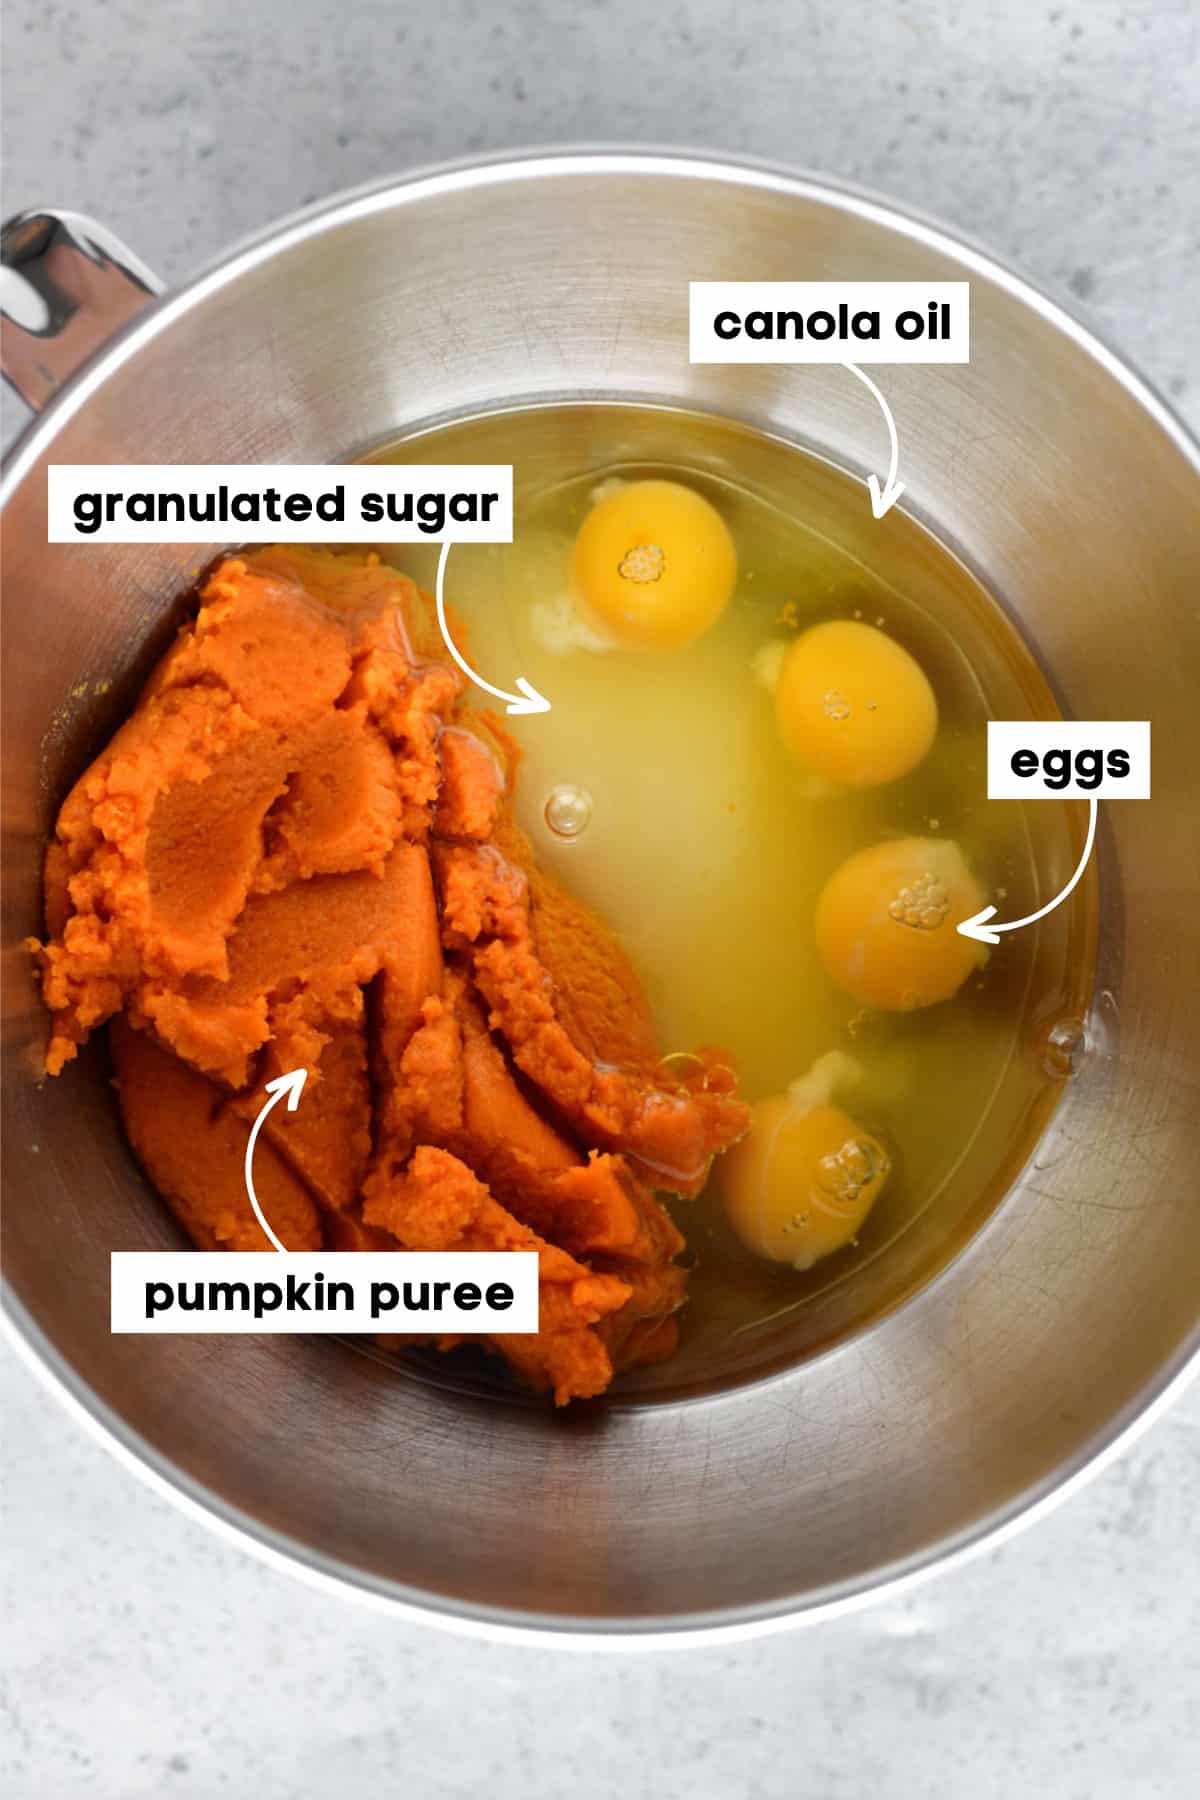 Wet ingredients in a metal bowl.